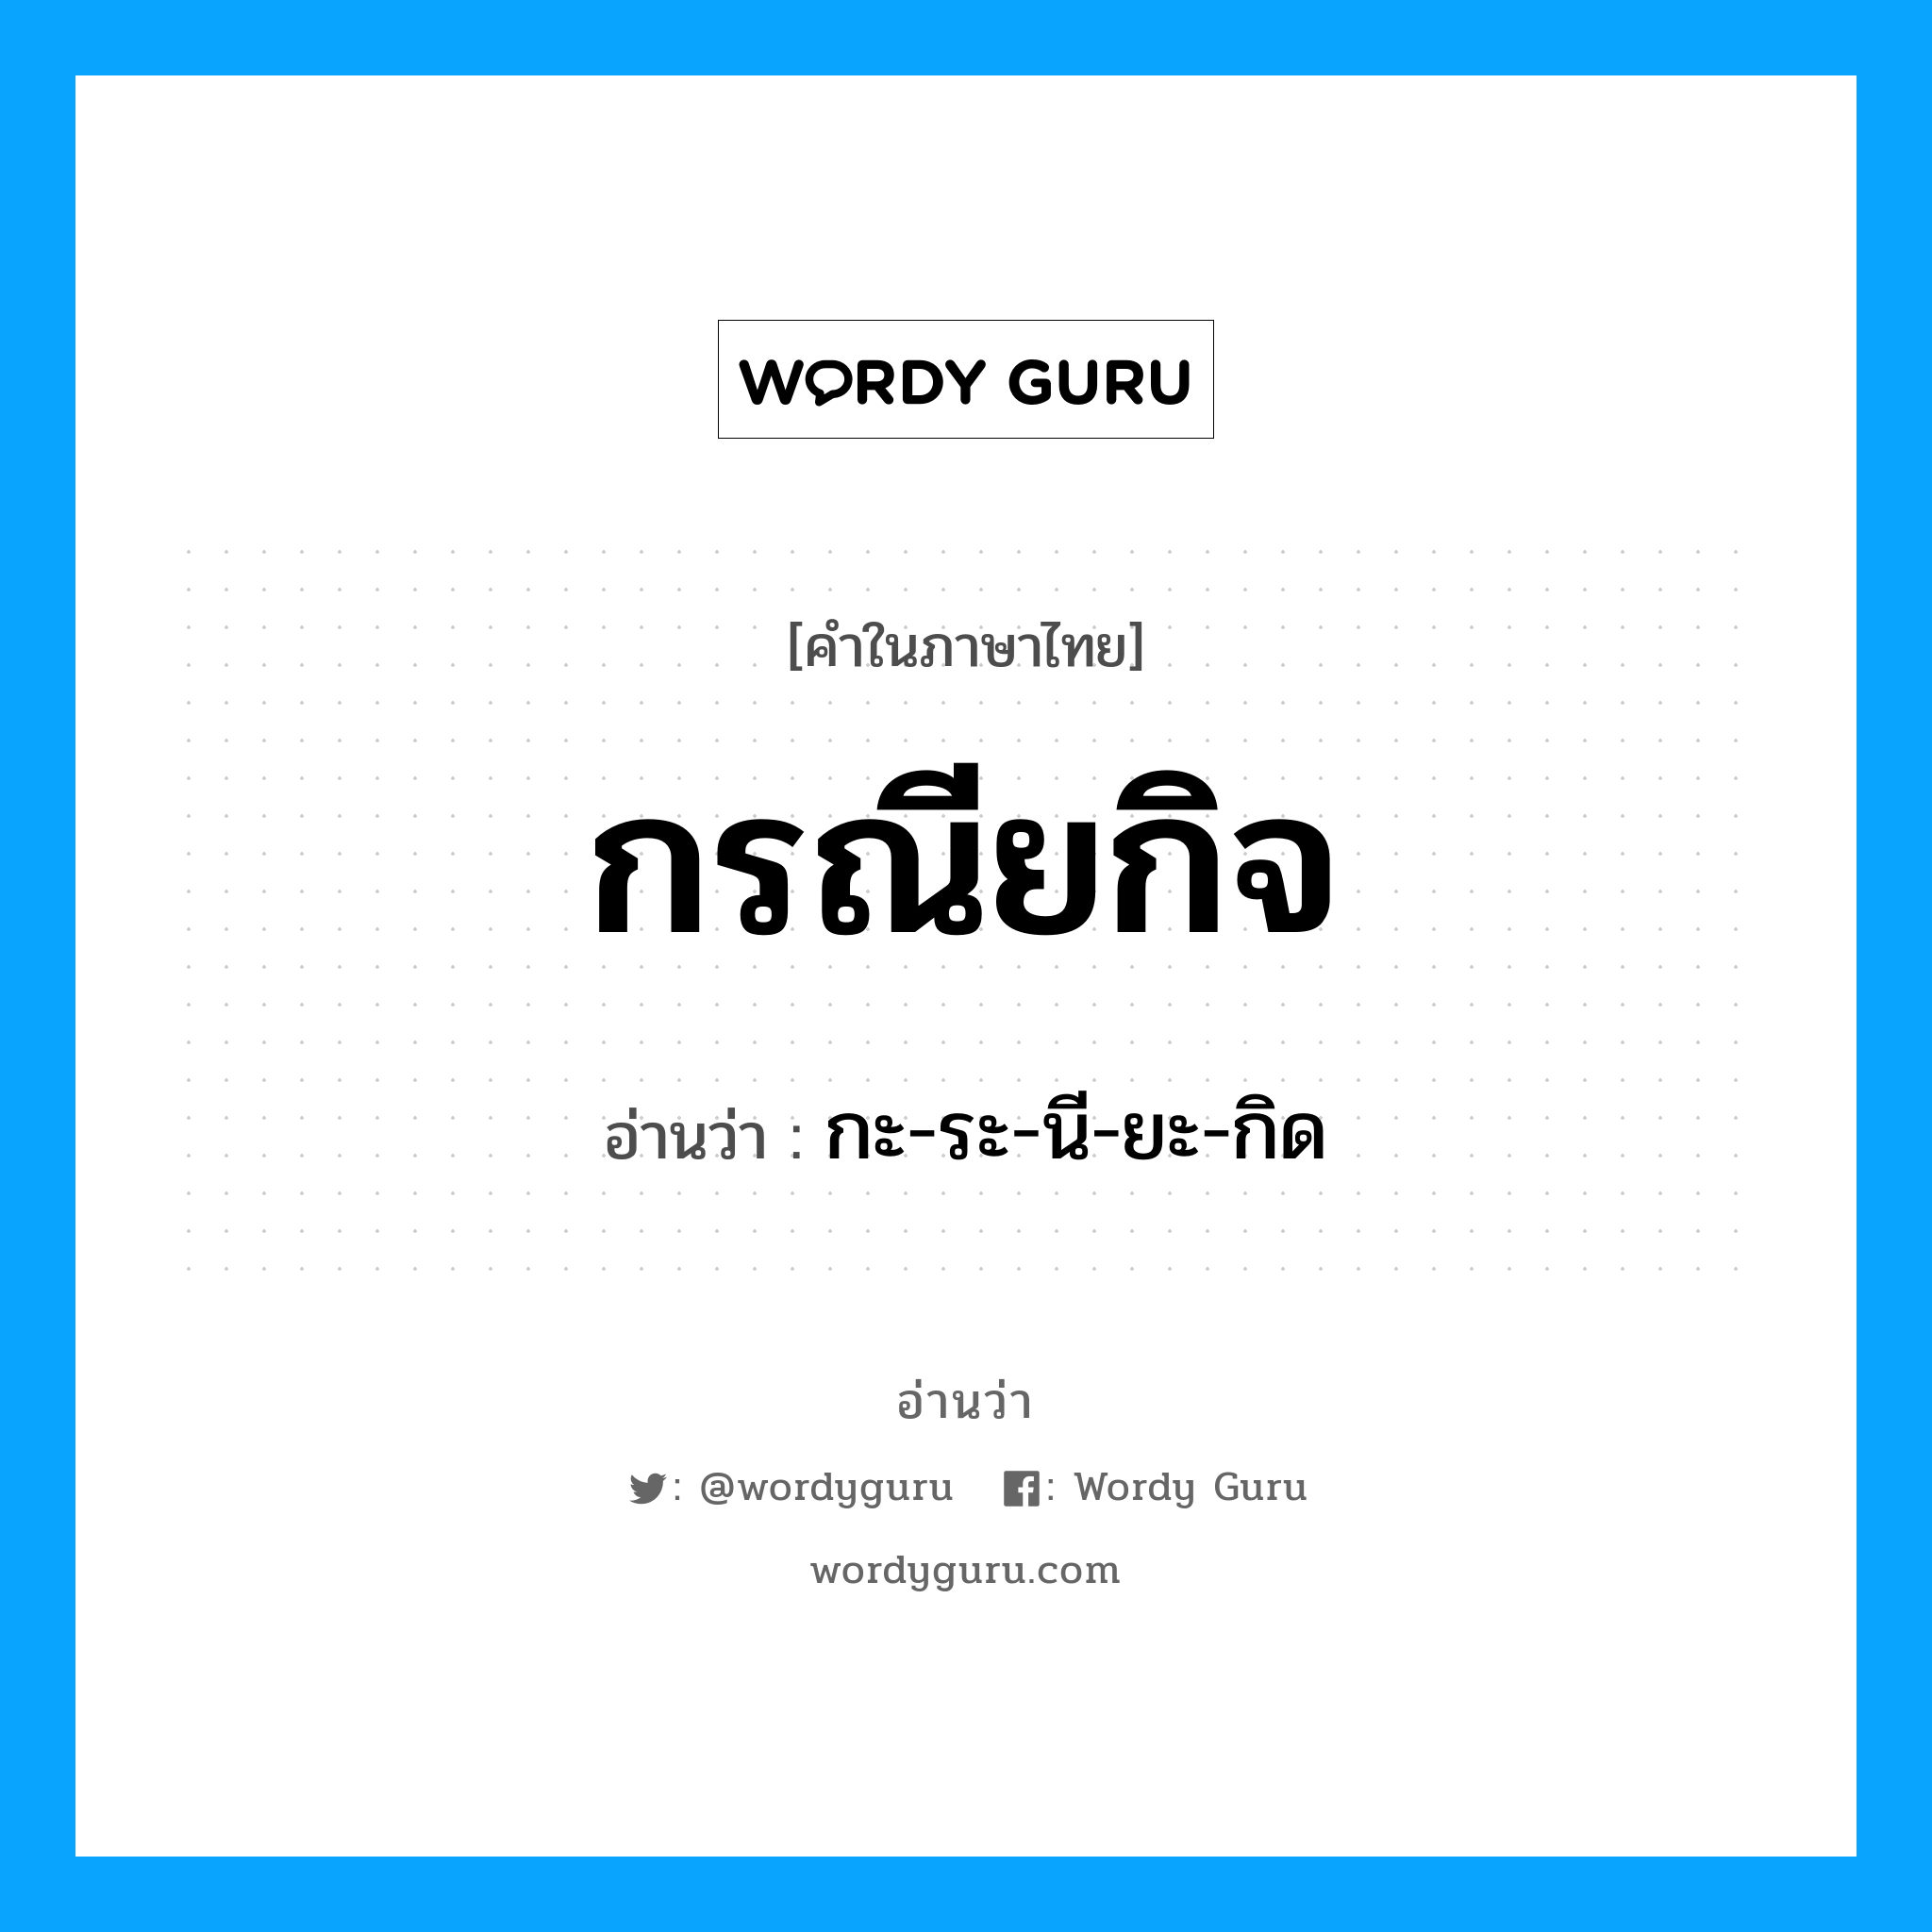 กะ-ระ-นี-ยะ-กิด เป็นคำอ่านของคำไหน?, คำในภาษาไทย กะ-ระ-นี-ยะ-กิด อ่านว่า กรณียกิจ